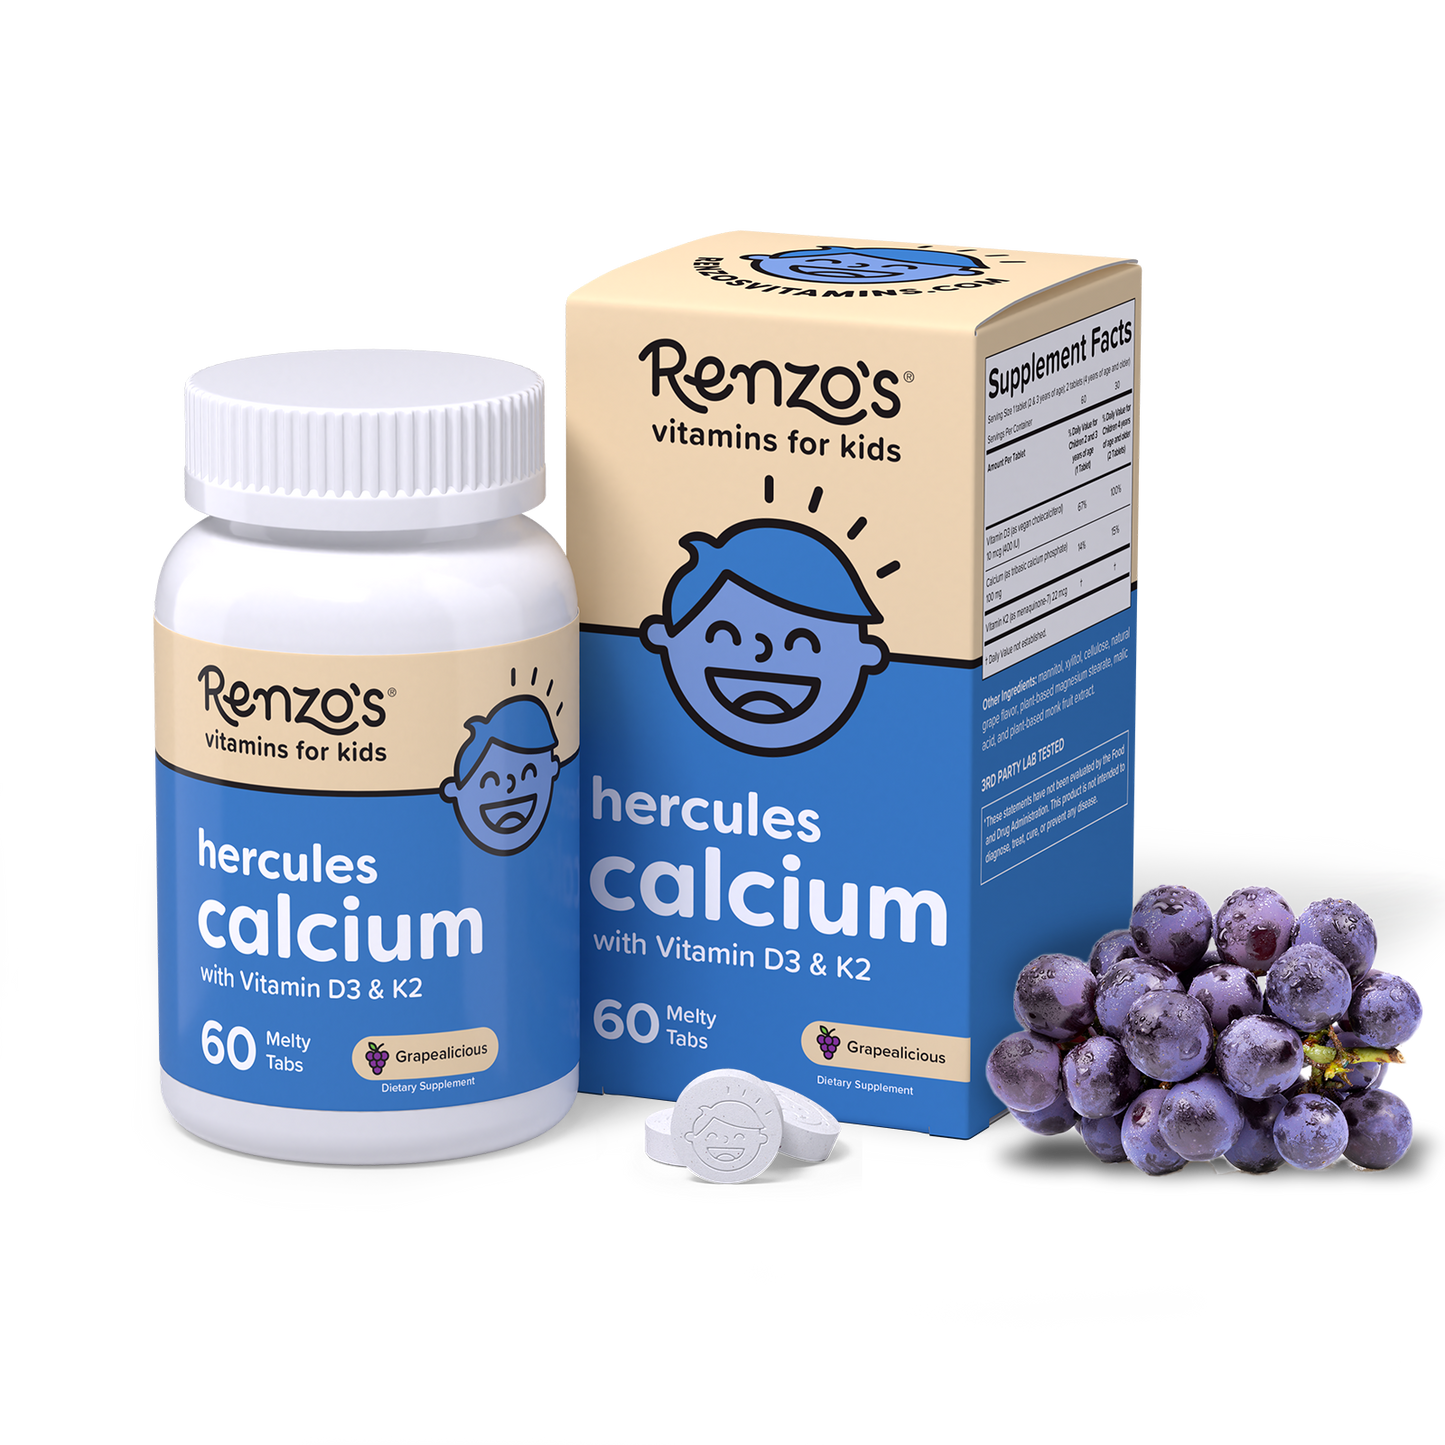 Hercules Calcium